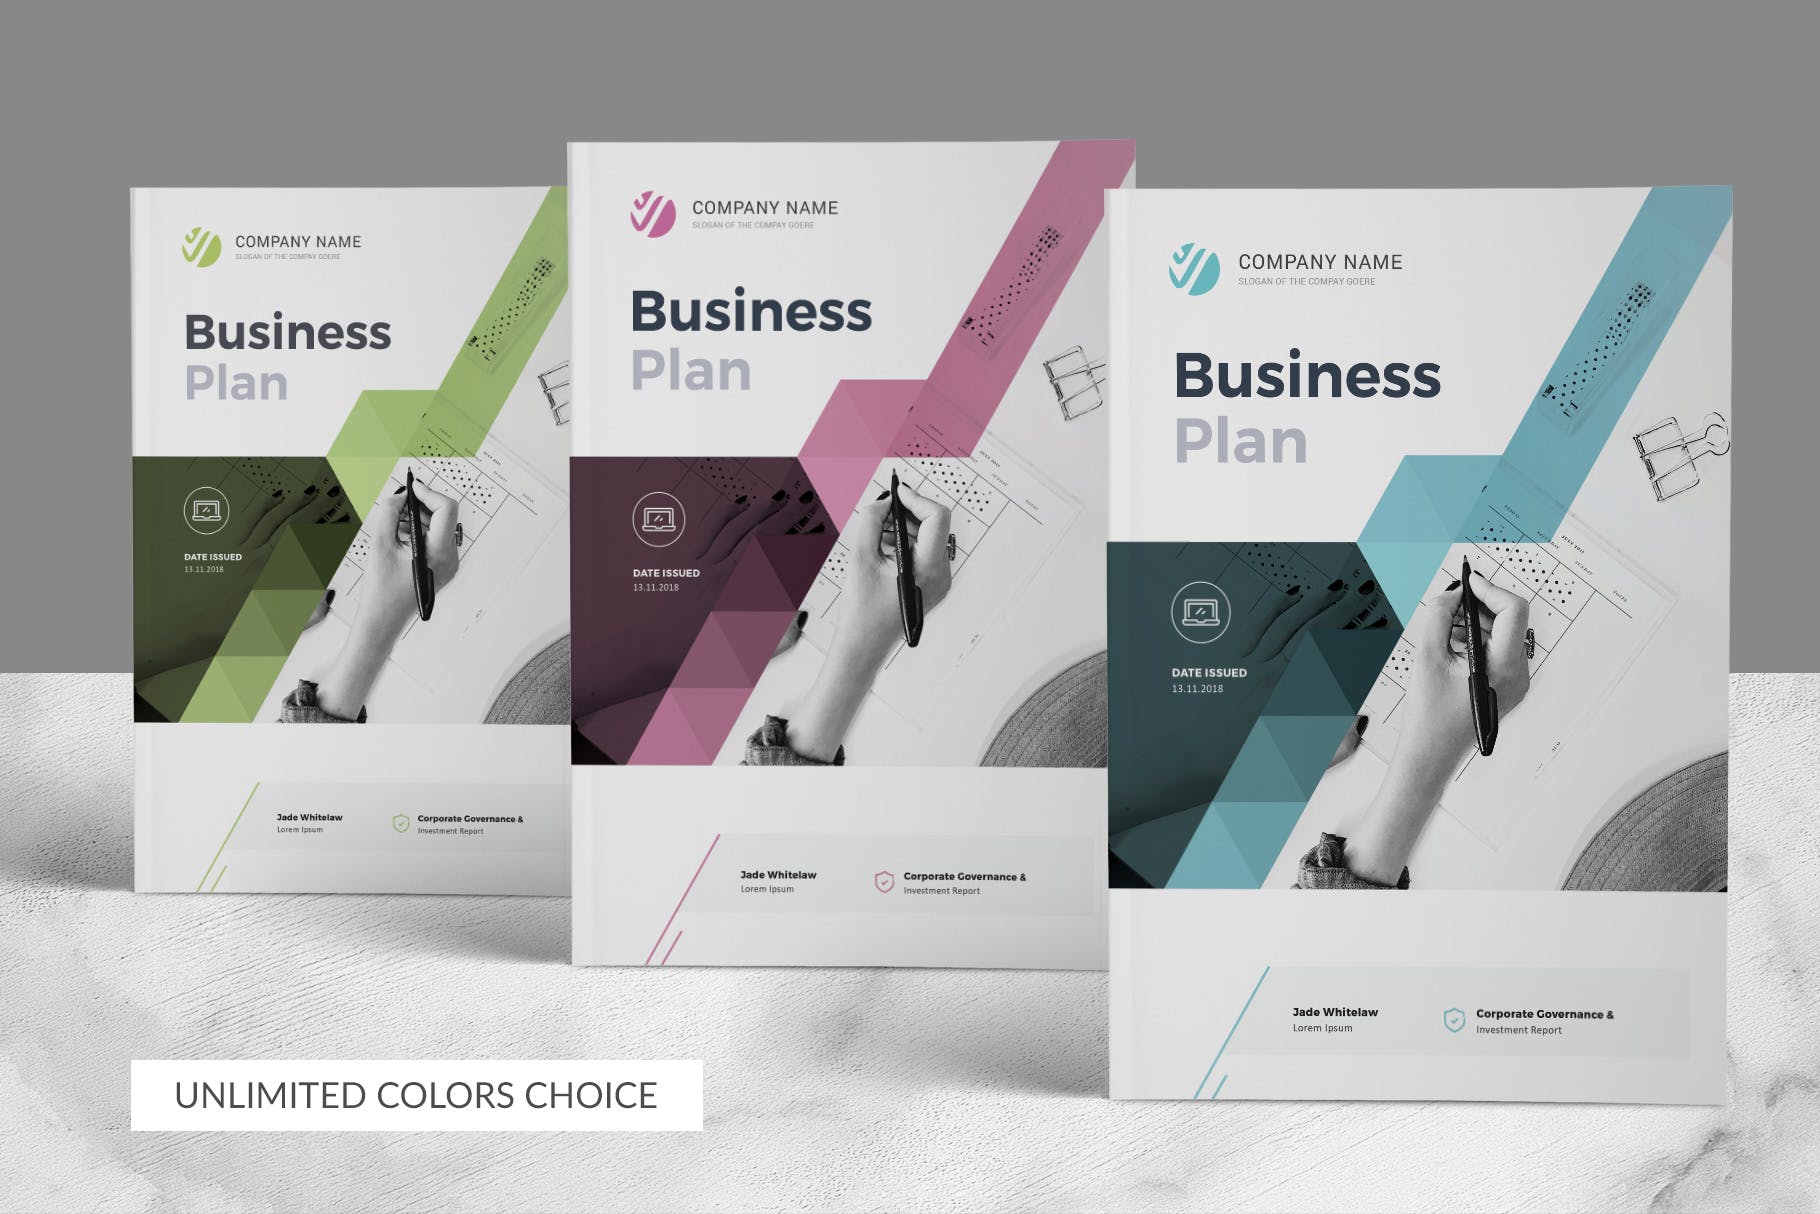 商业计划书/商业规划书设计模板 Business Plan插图3